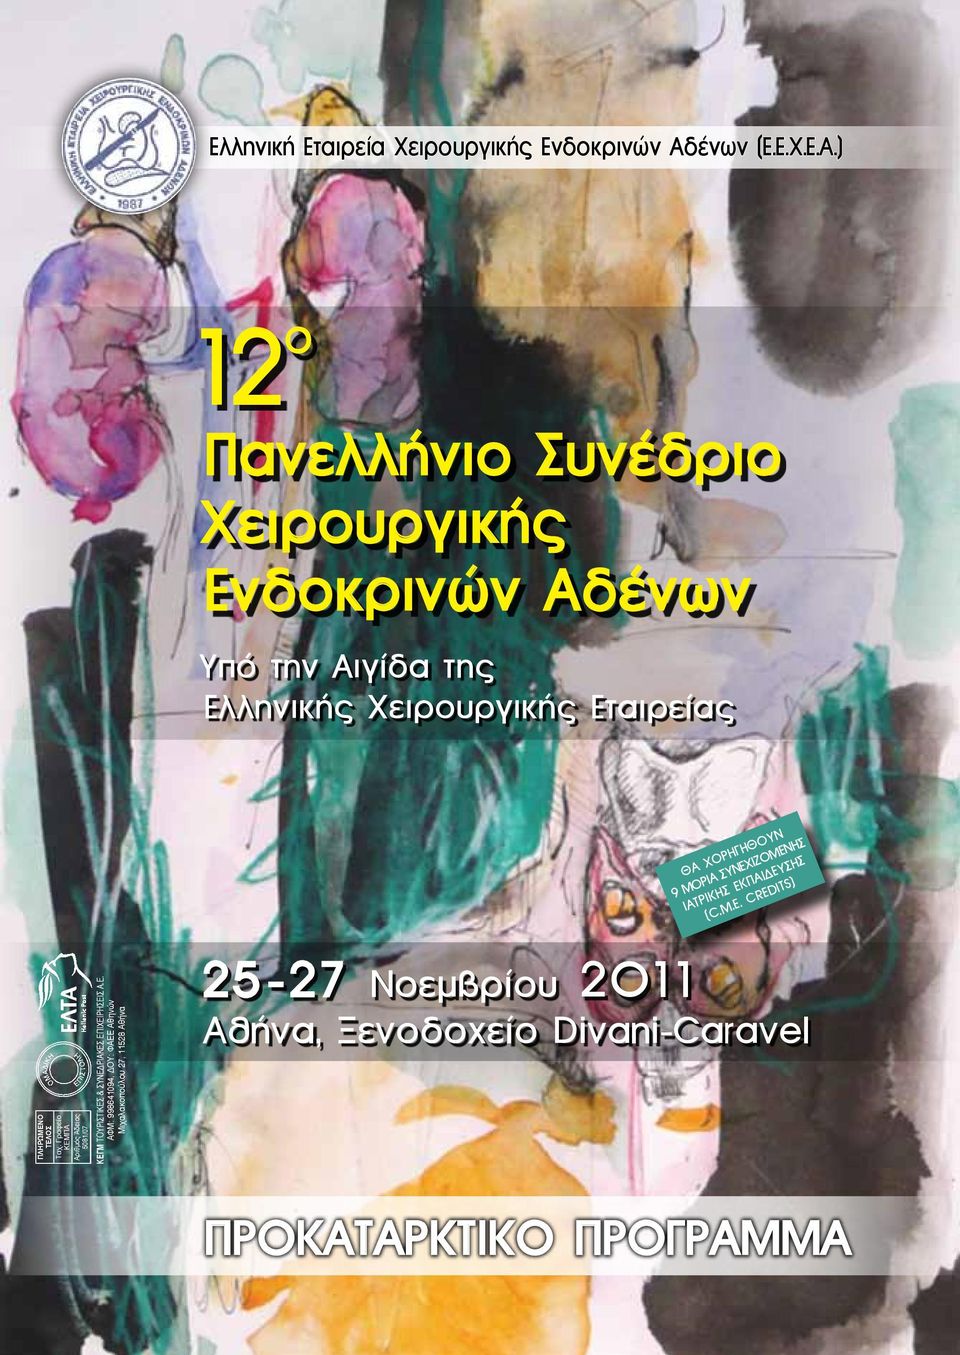 ) 12 ο Πανελλήνιο Συνέδριο Χειρουργικής Ενδοκρινών Αδένων Υπό την Αιγίδα της Ελληνικής Χειρουργικής Εταιρείας ΠΛΗΡΩΜΕΝΟ